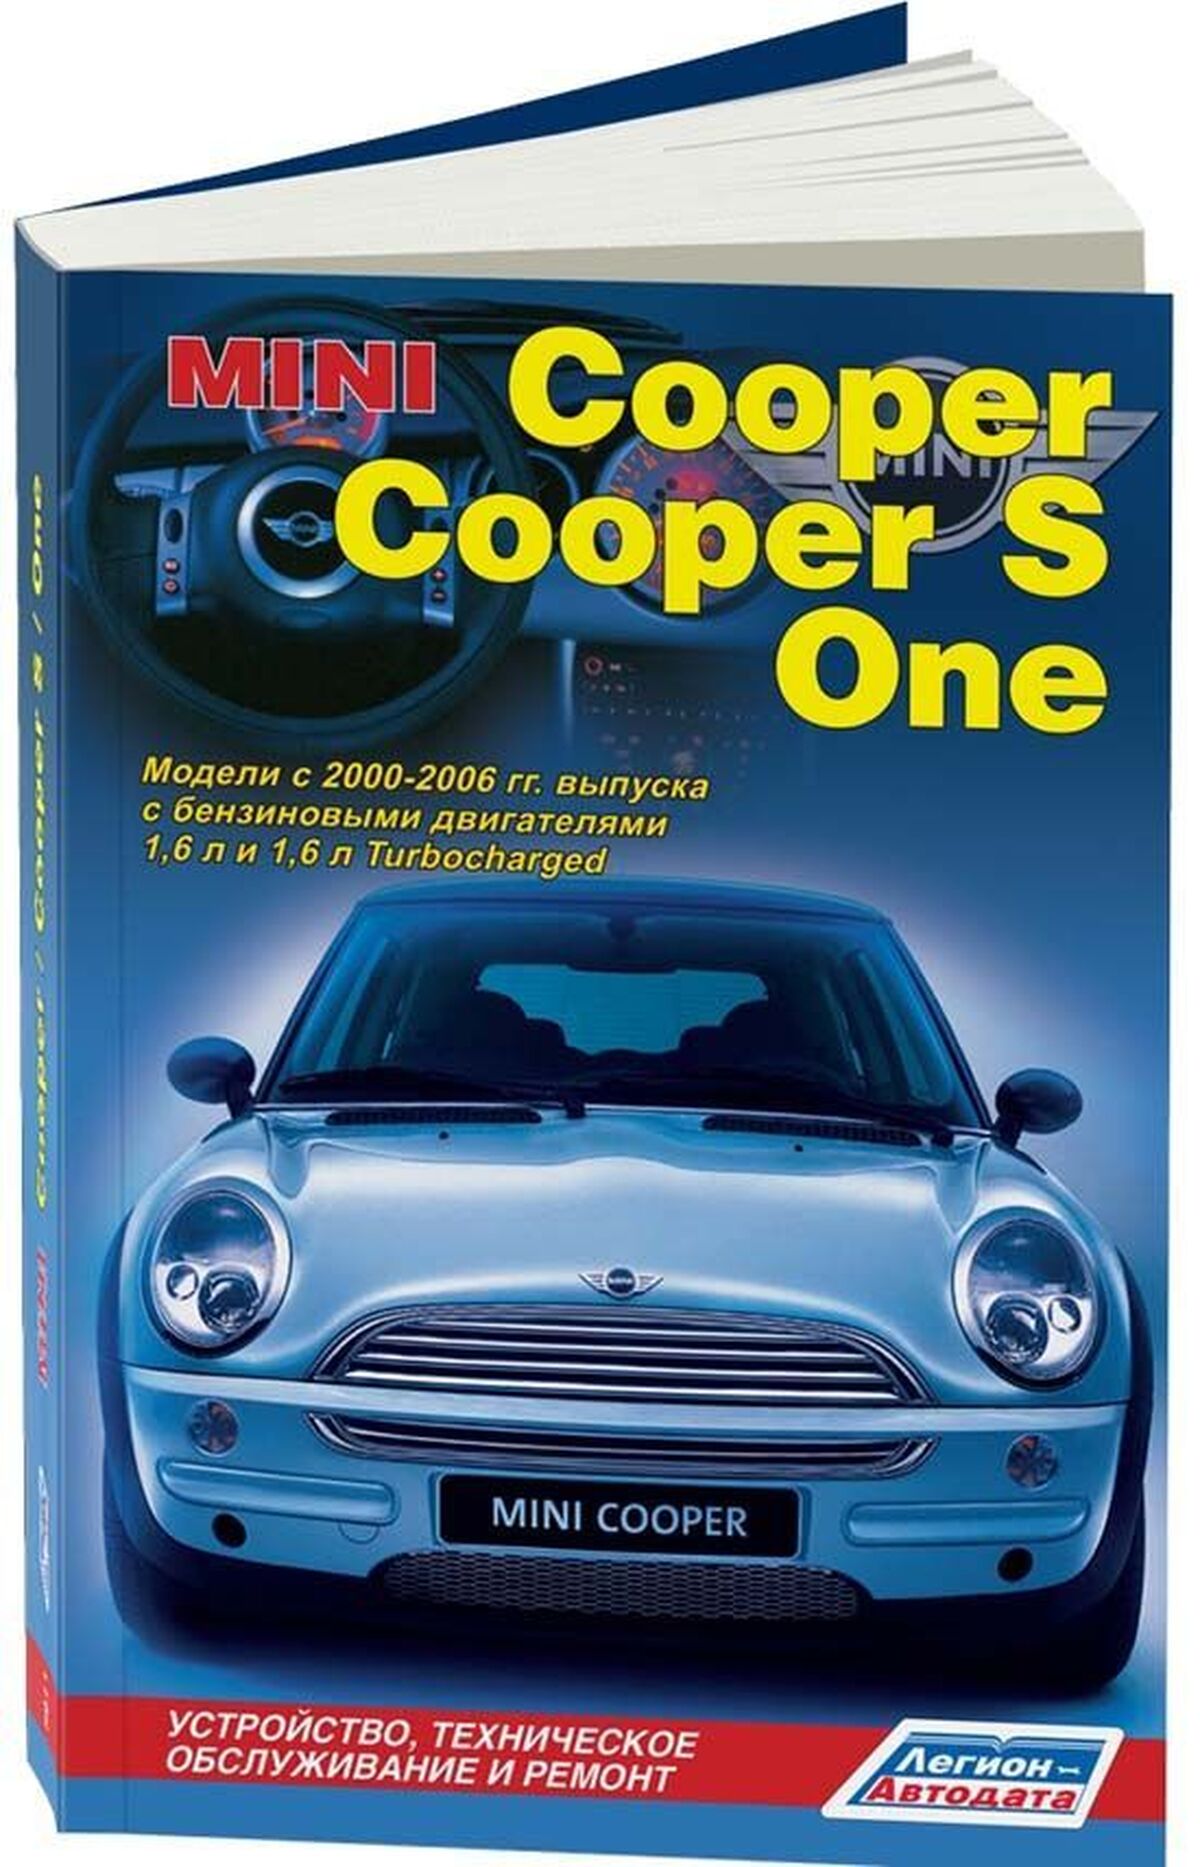 Книга: MINI COOPER / COOPER S / ONE (б) 2000-2006 г.в., рем., экспл., то | Легион-Aвтодата